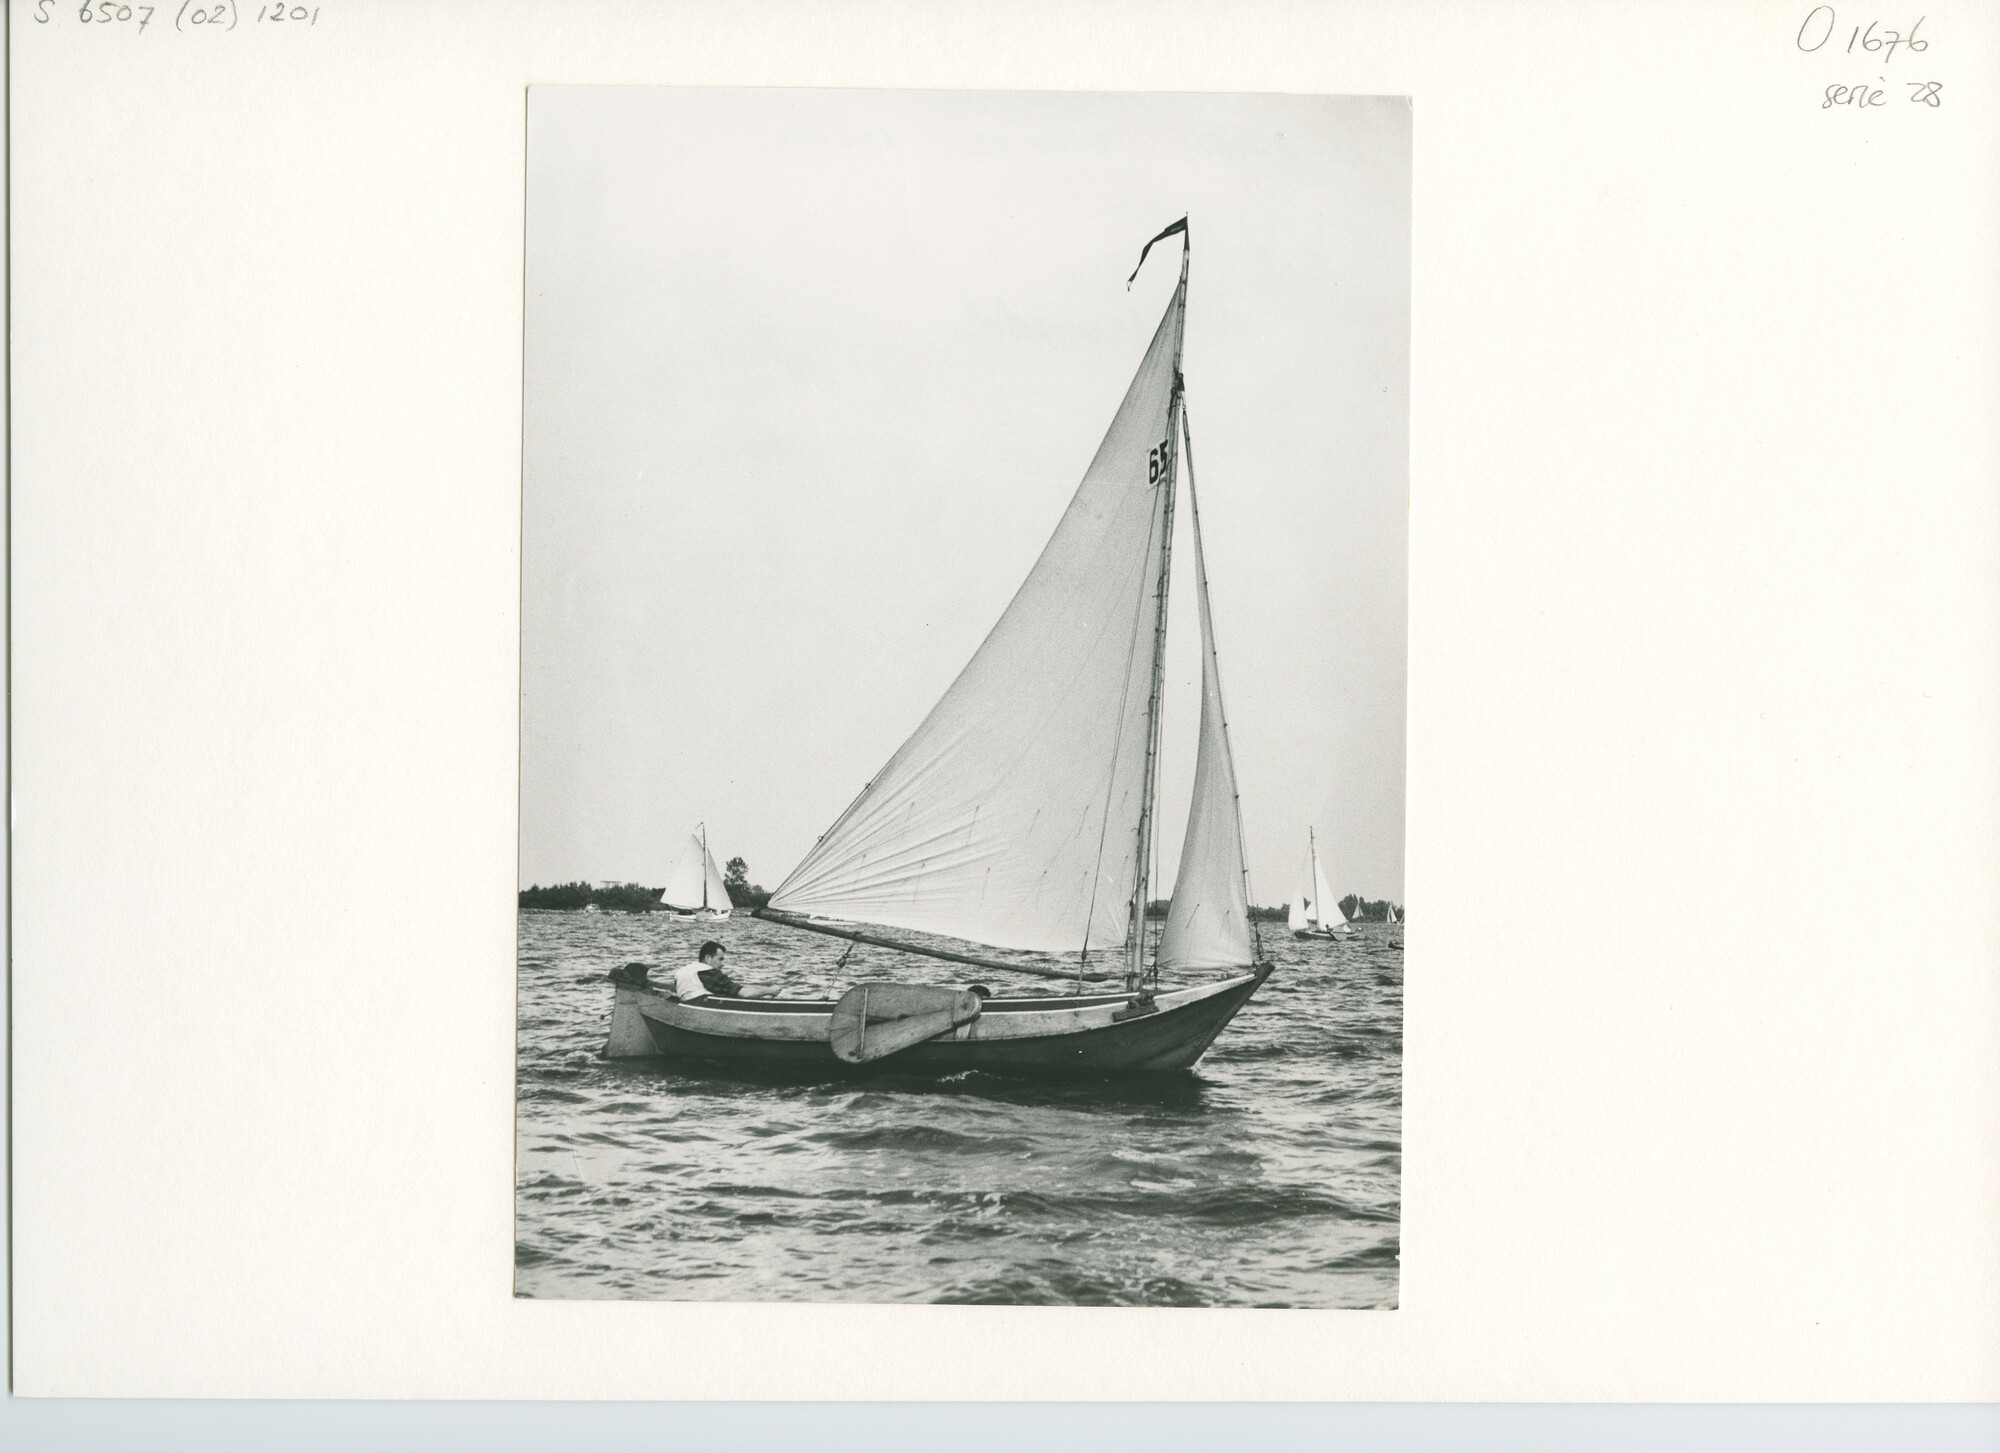 S.6507(02)1201; Zwart-wit foto van een houten punter met torengrootzeil en fok tijdens een wedstrijd op [...]; foto